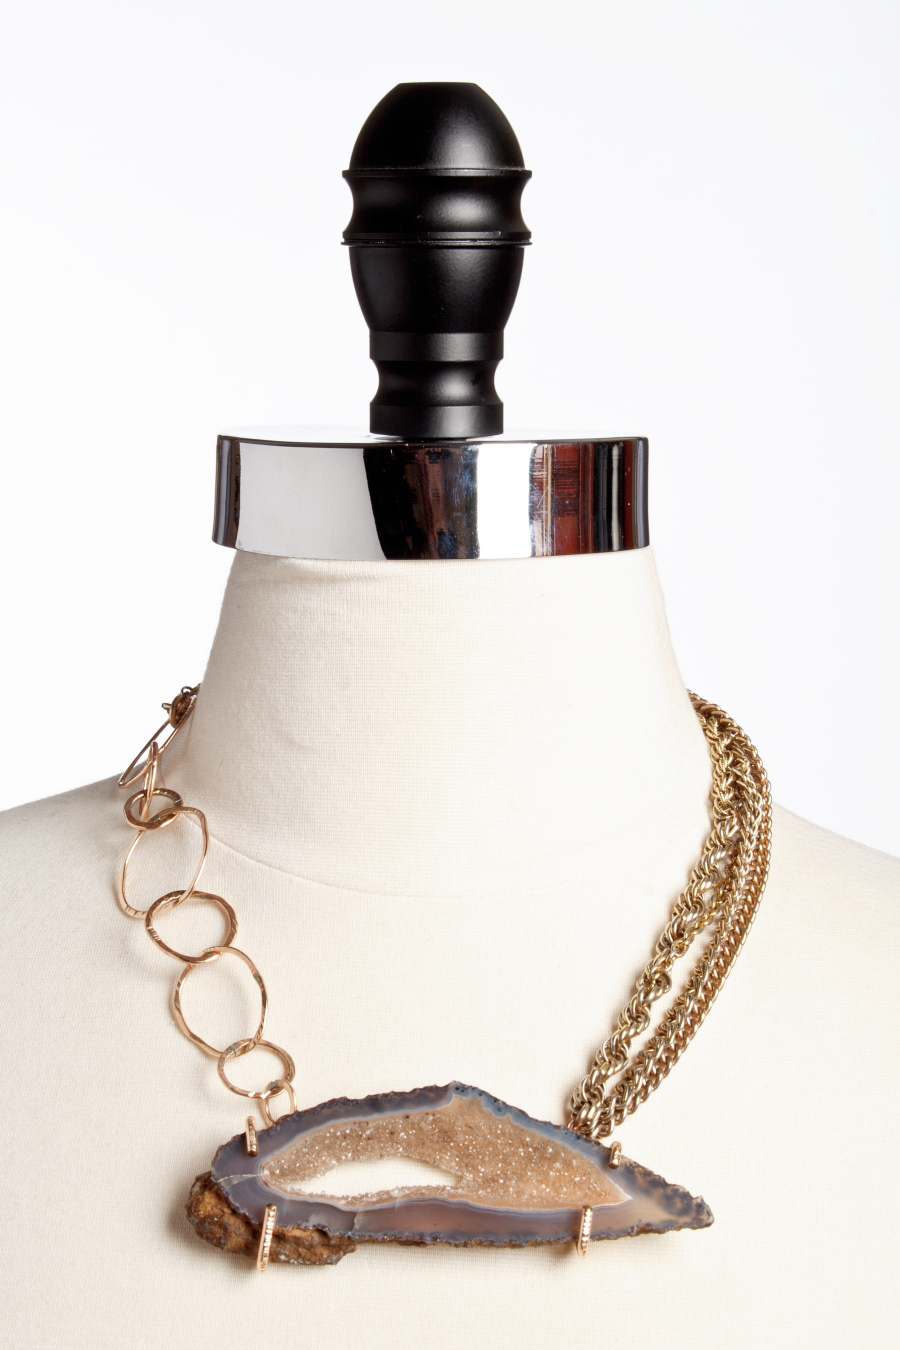 jewelry rocks minerals necklaces earrings danamarieburmeister SCAD